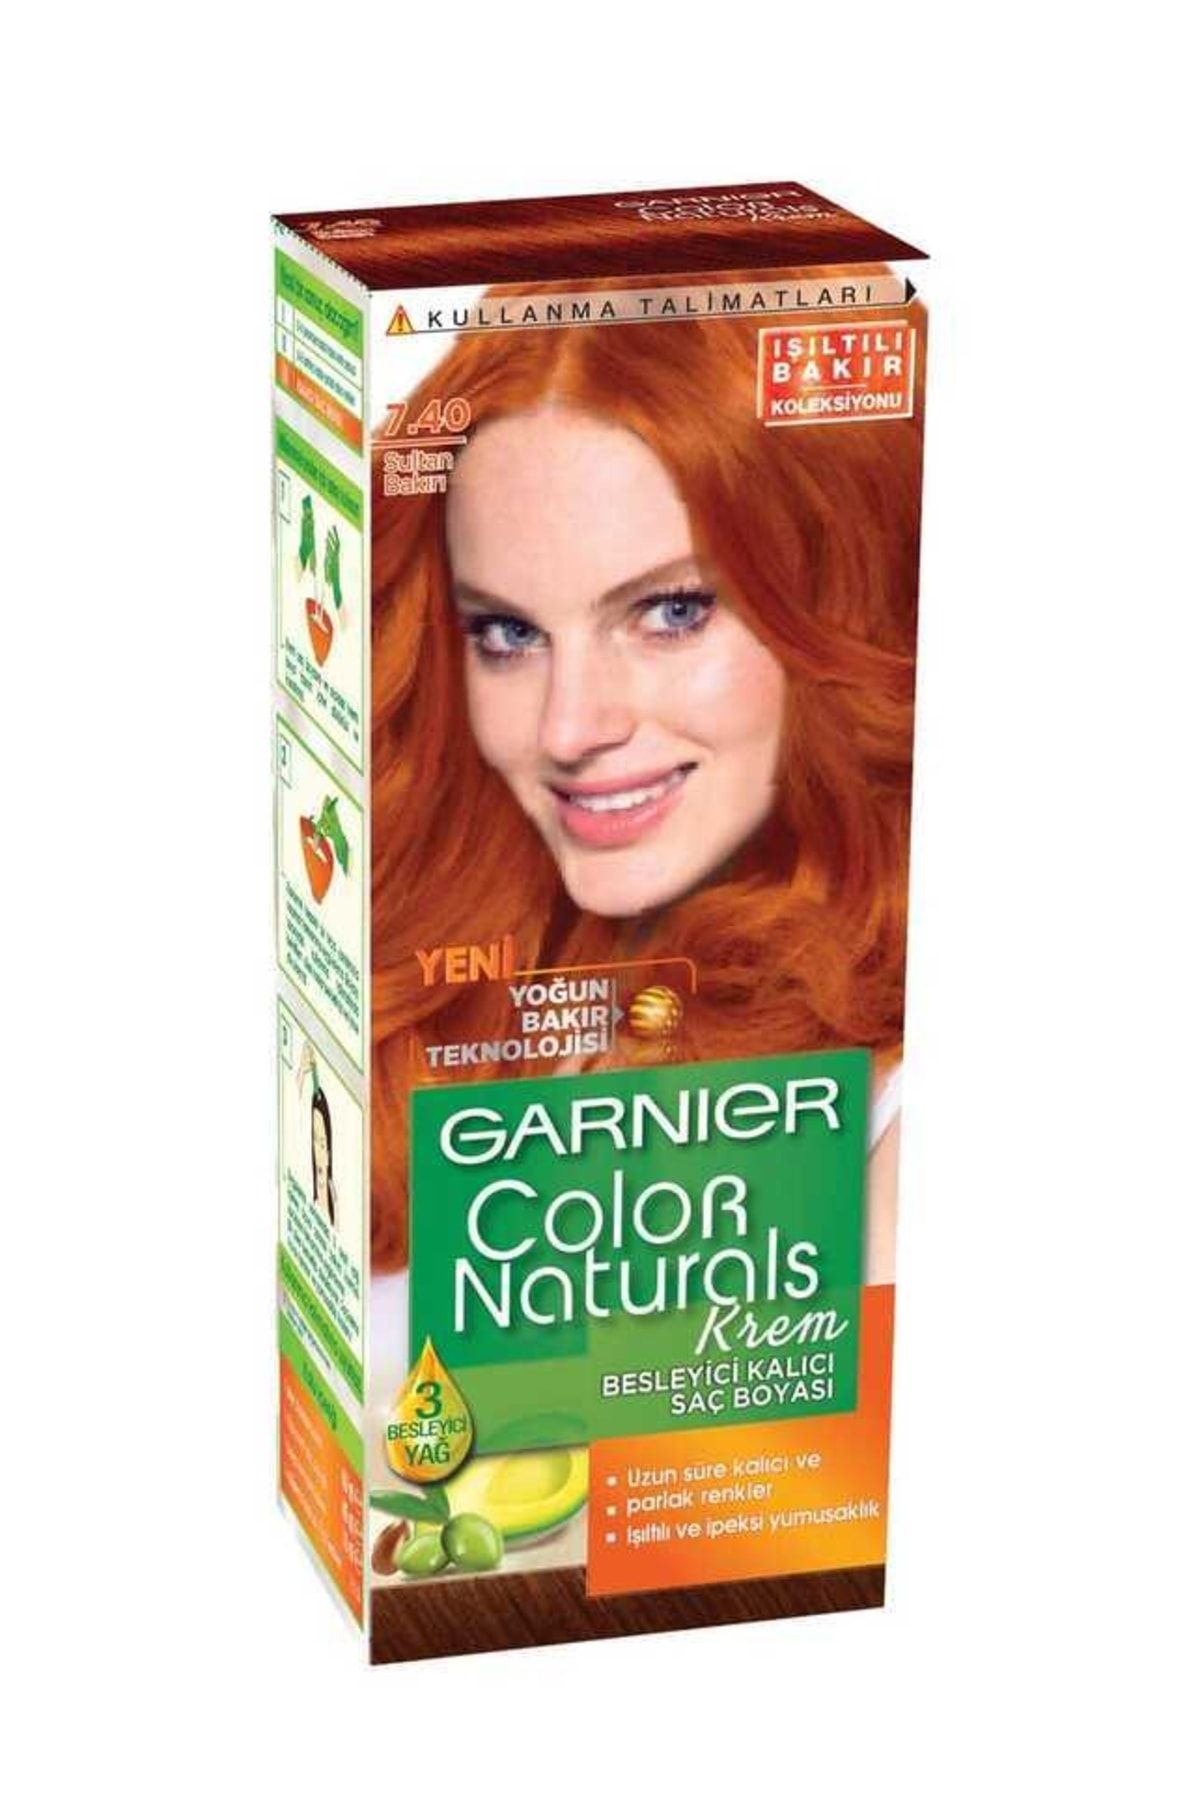 Garnier Color Naturals Krem Saç Boyası 7.40+ Sultan Bakırı